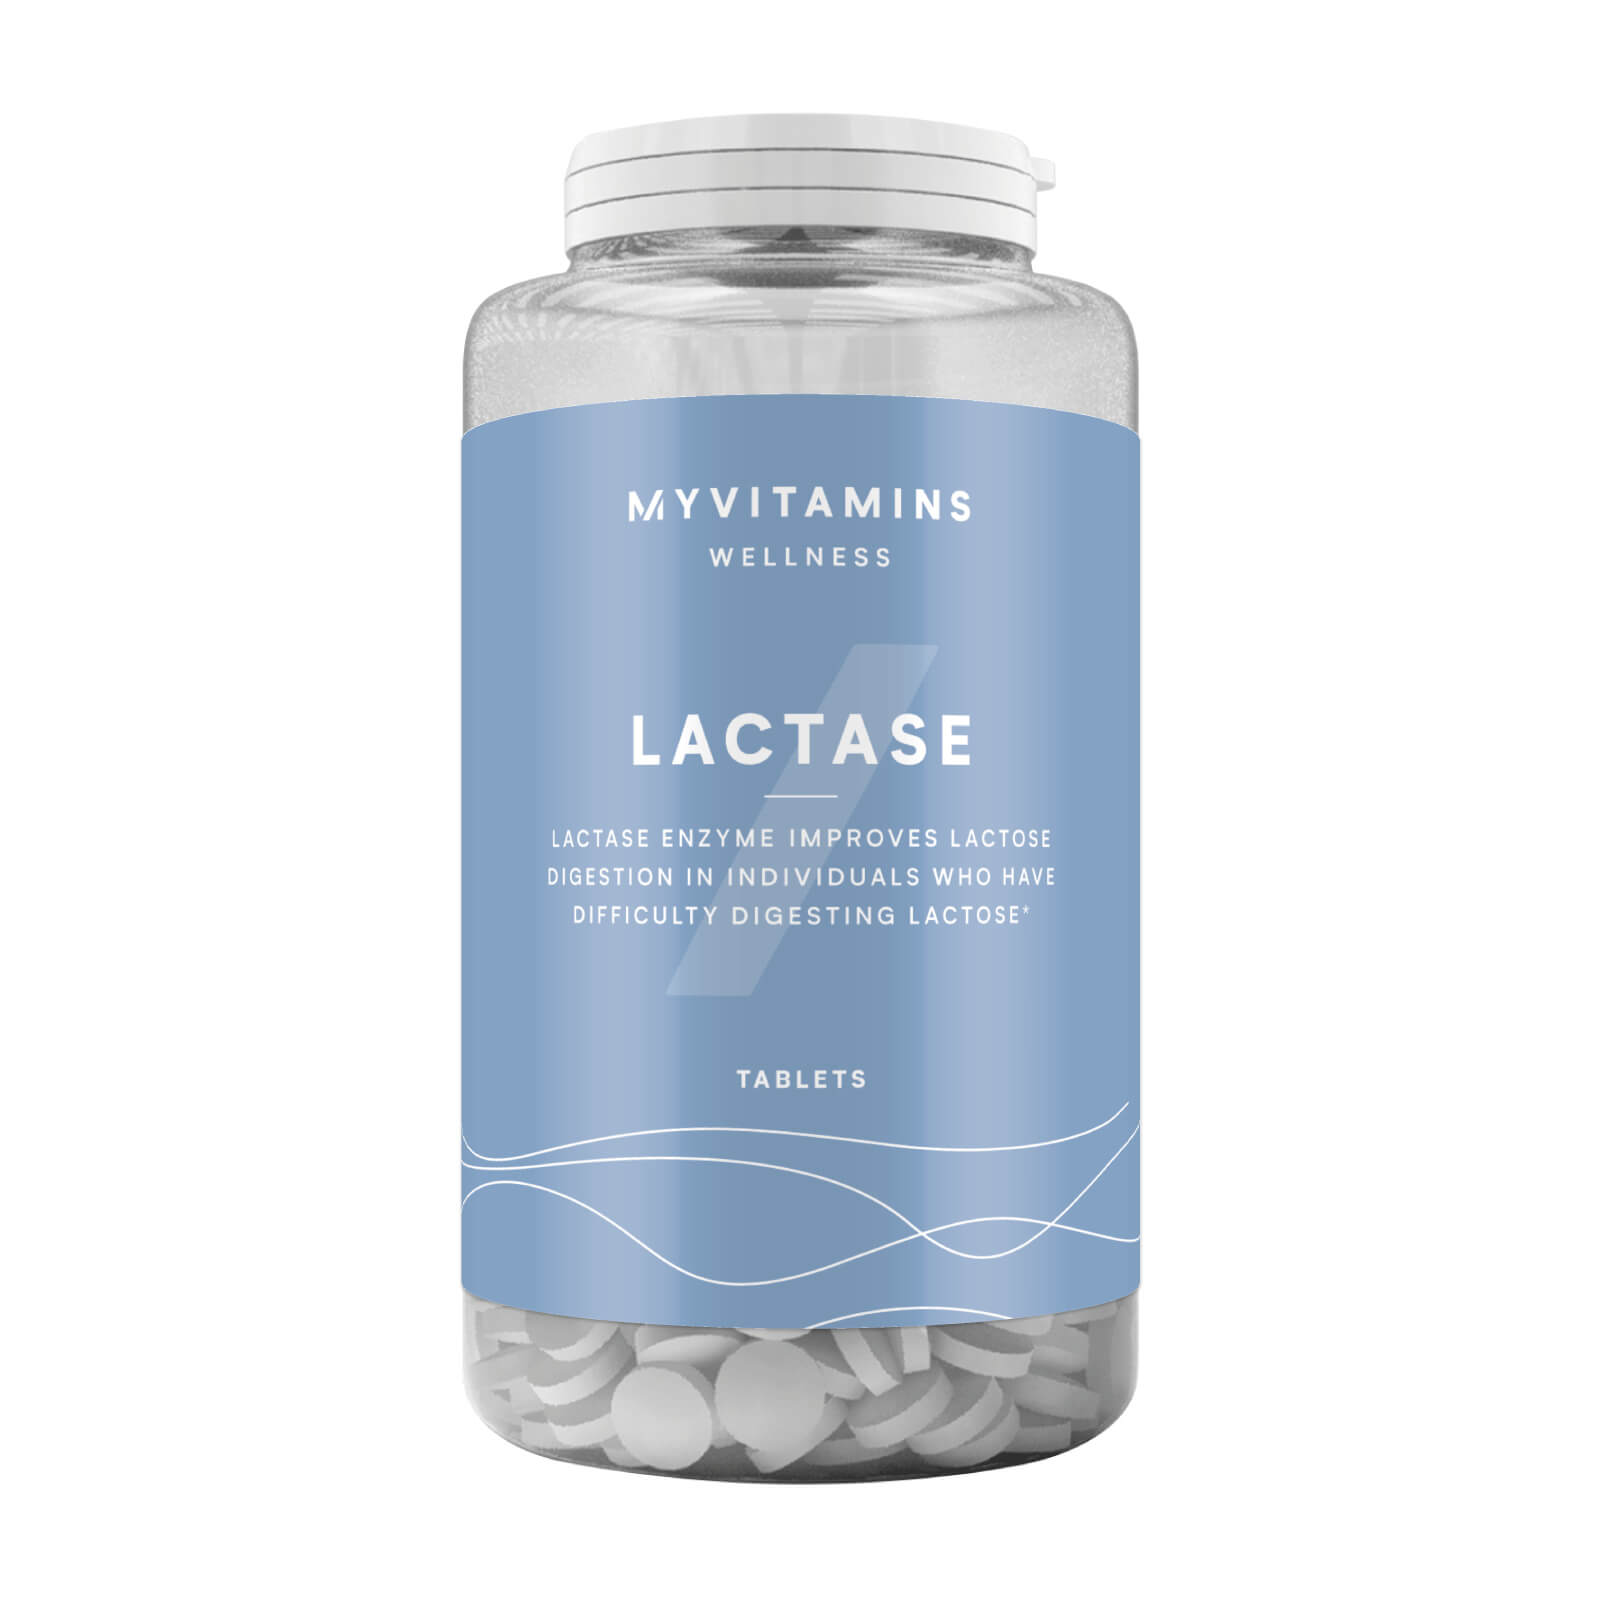 Enzyme lactase